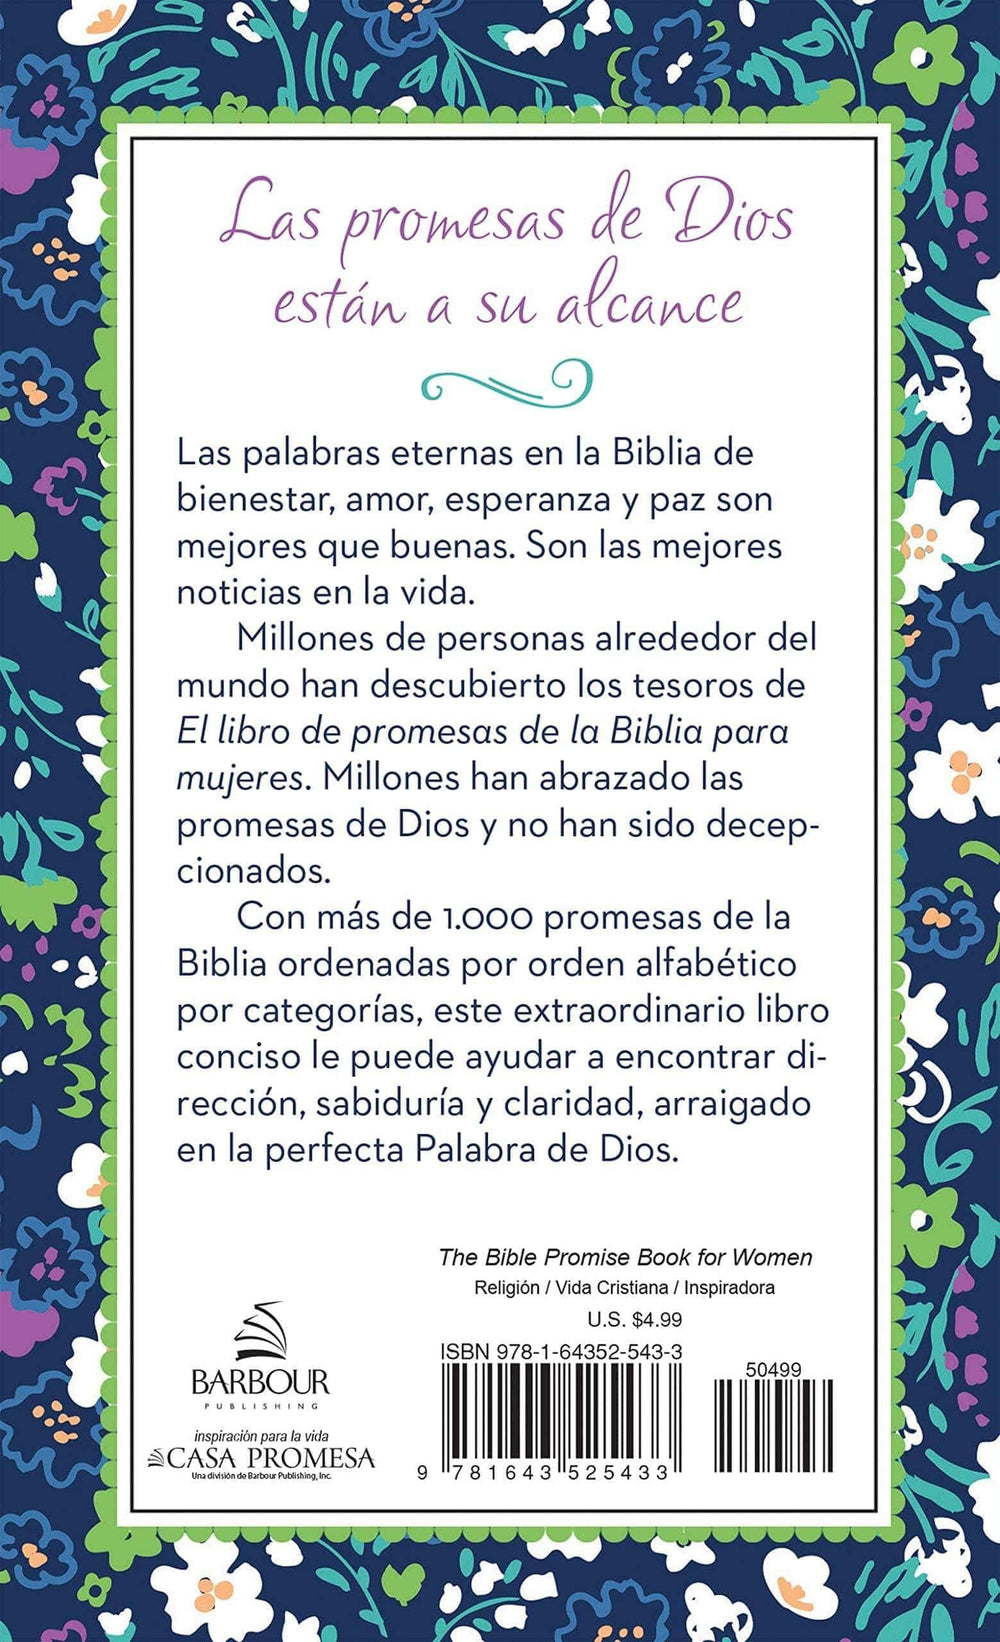 El libro de promesas de la Biblia para mujeres - Pura Vida Books